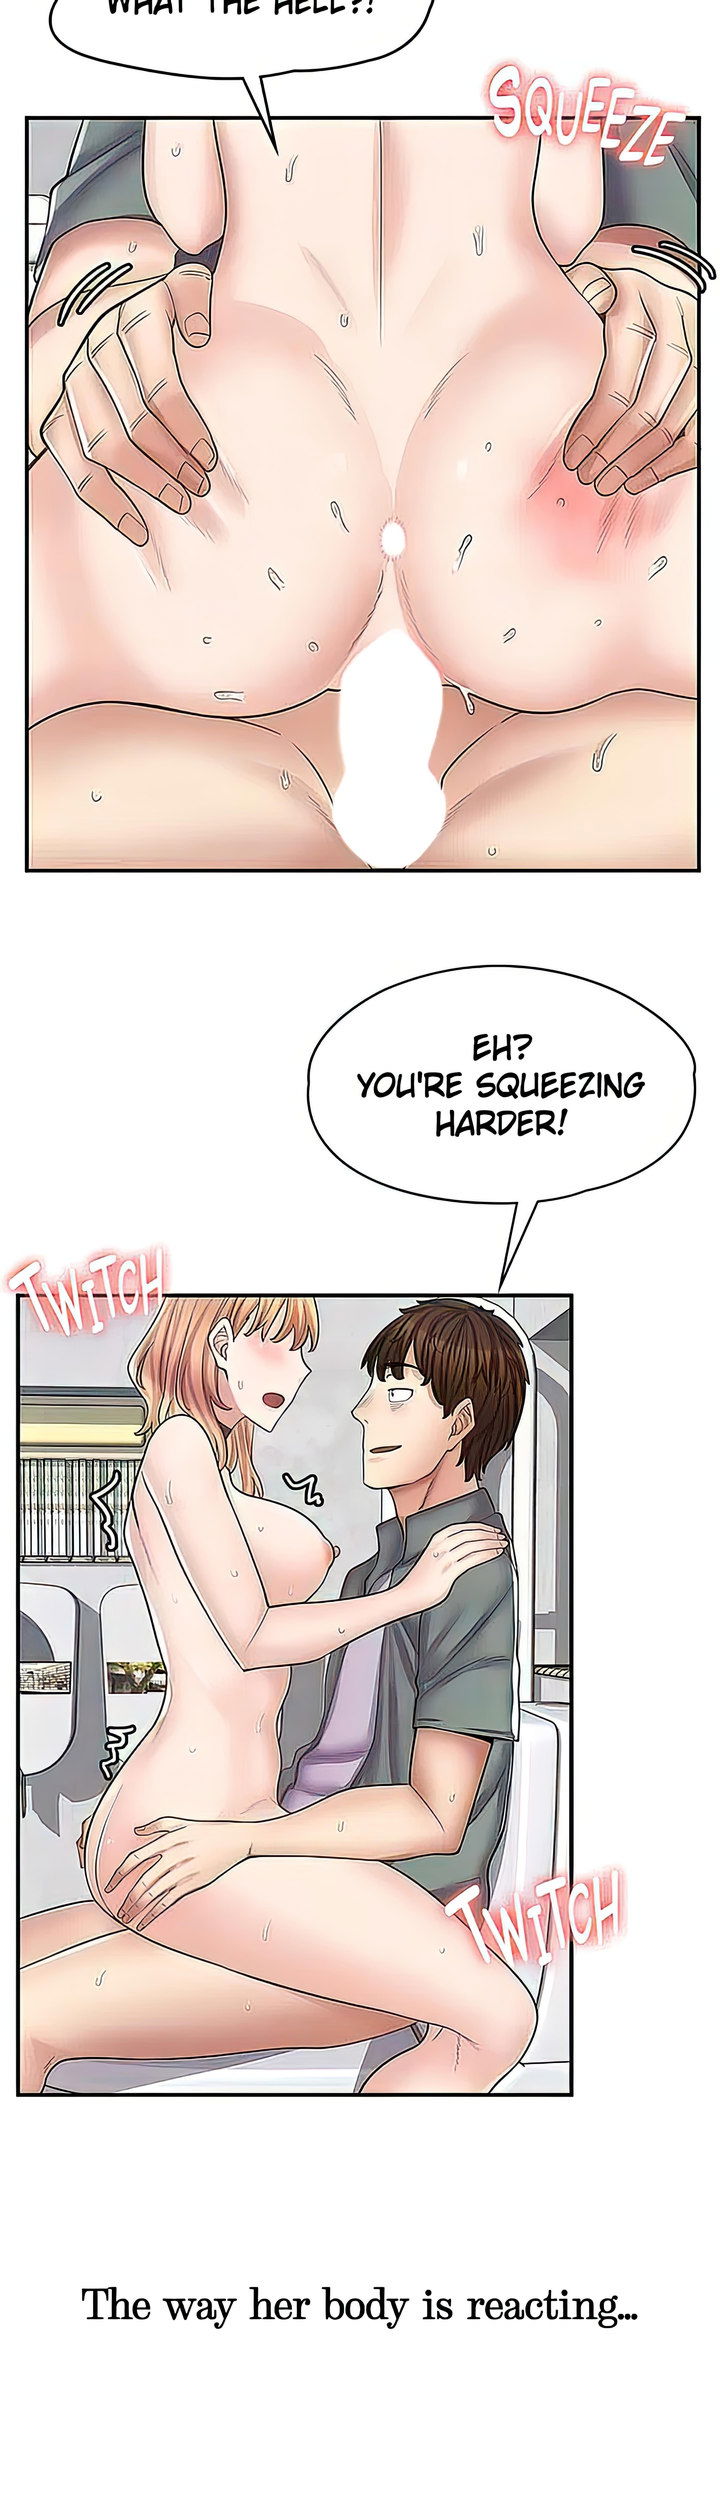 erotic-manga-cafe-girls-chap-9-30